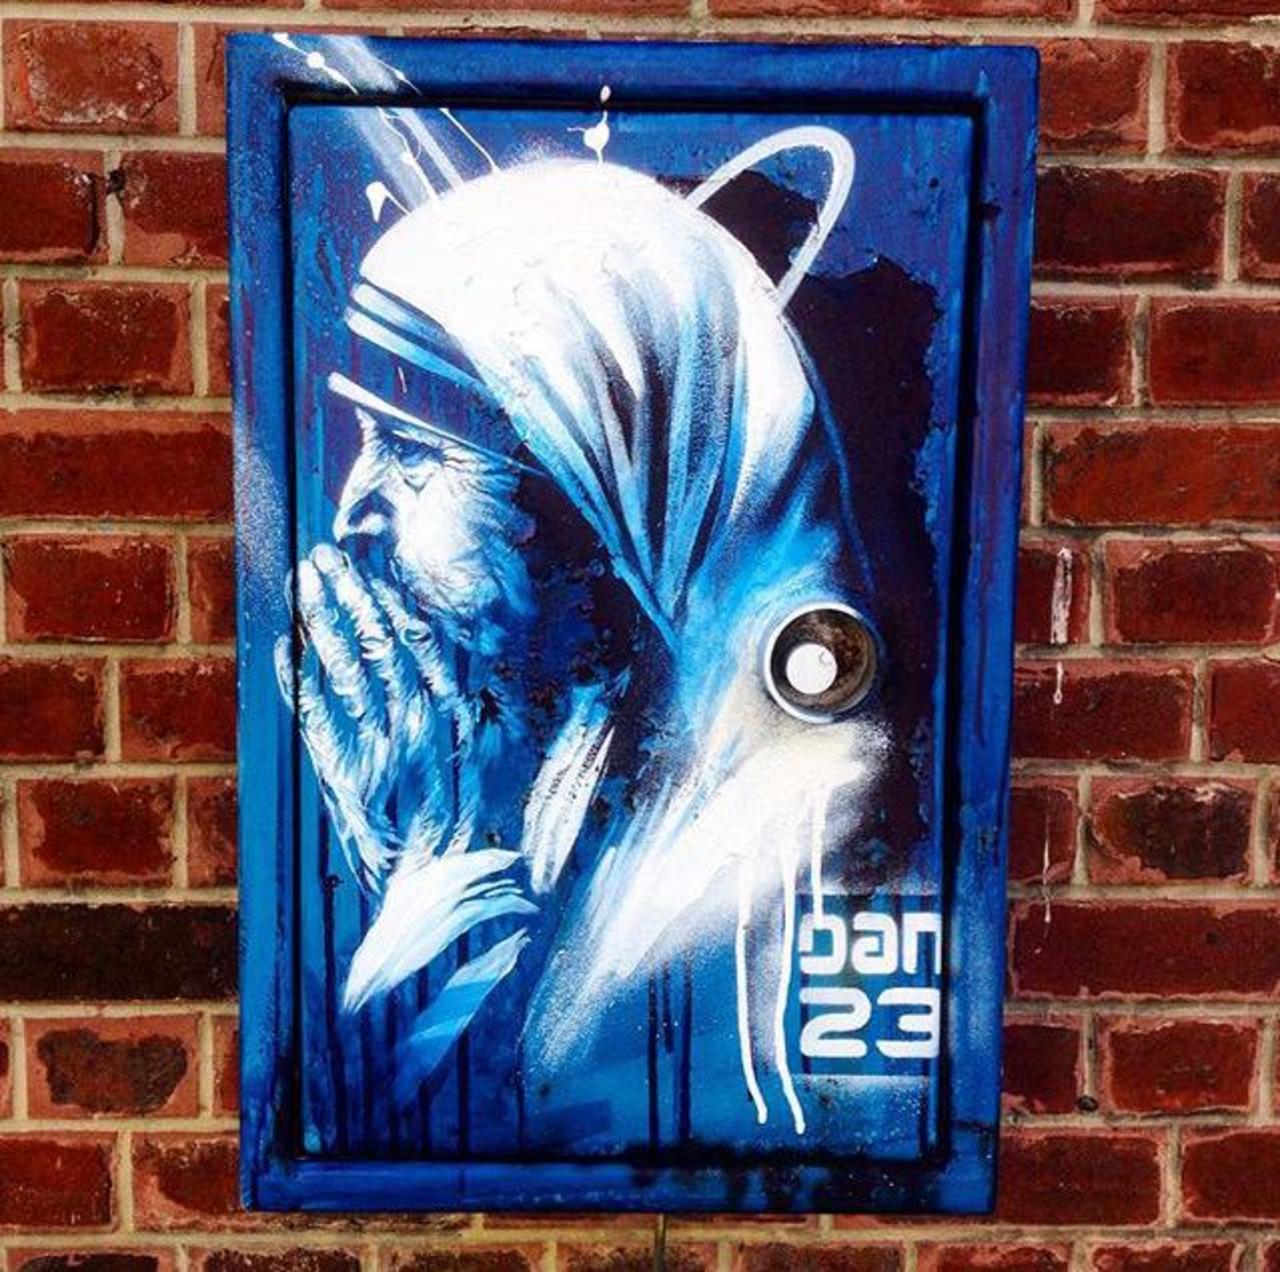 RT @GoogleStreetArt: New Street Art 'Détail Spirit' by Dan23 

#art #graffiti #mural #streetart http://t.co/v9RMKX15SE